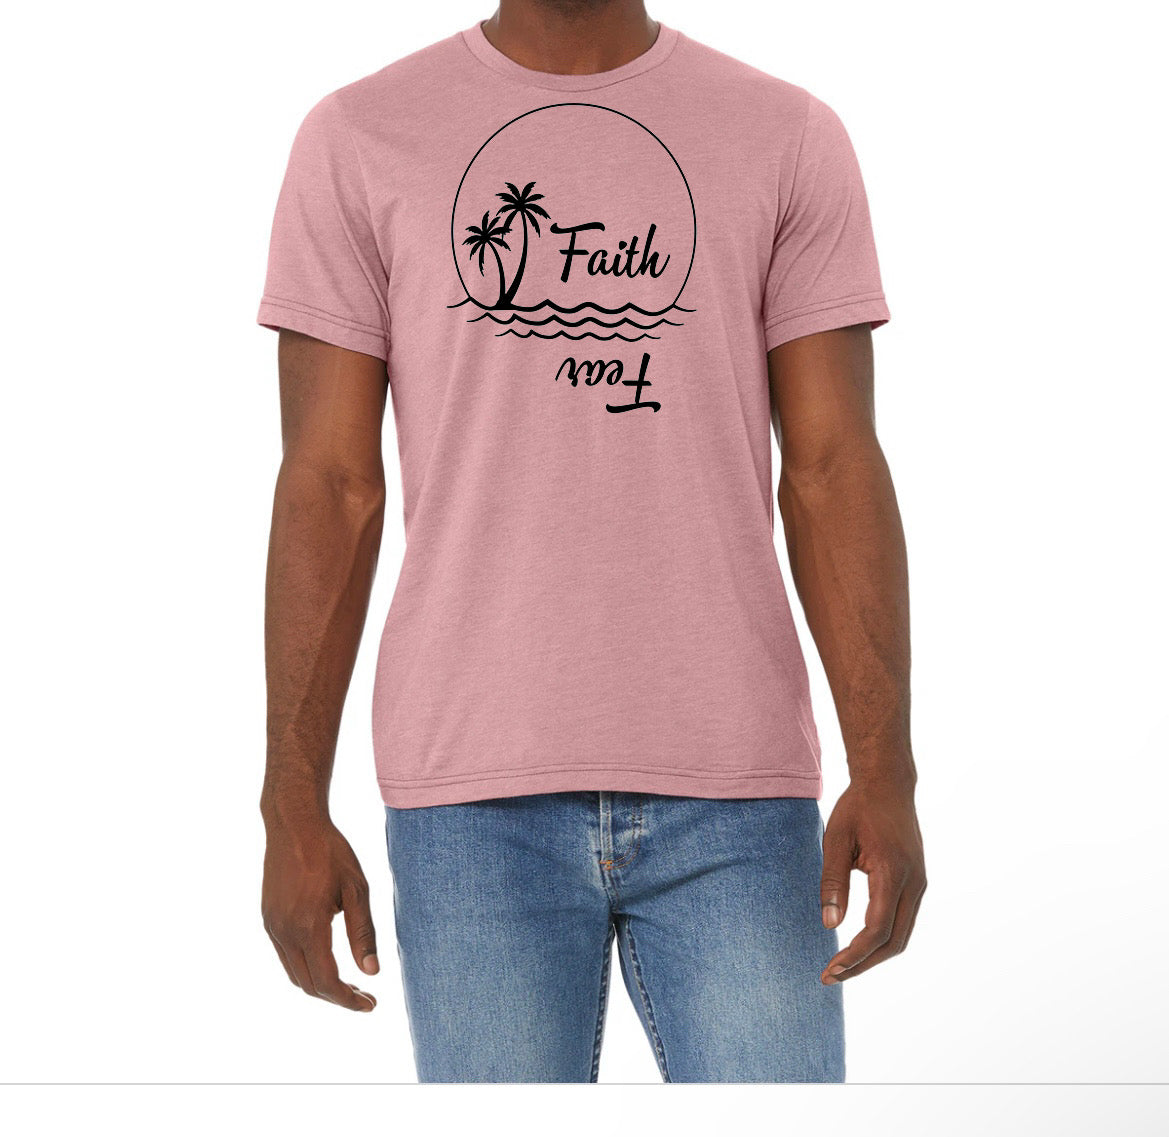 Unisex t-shirt: Faith over fear